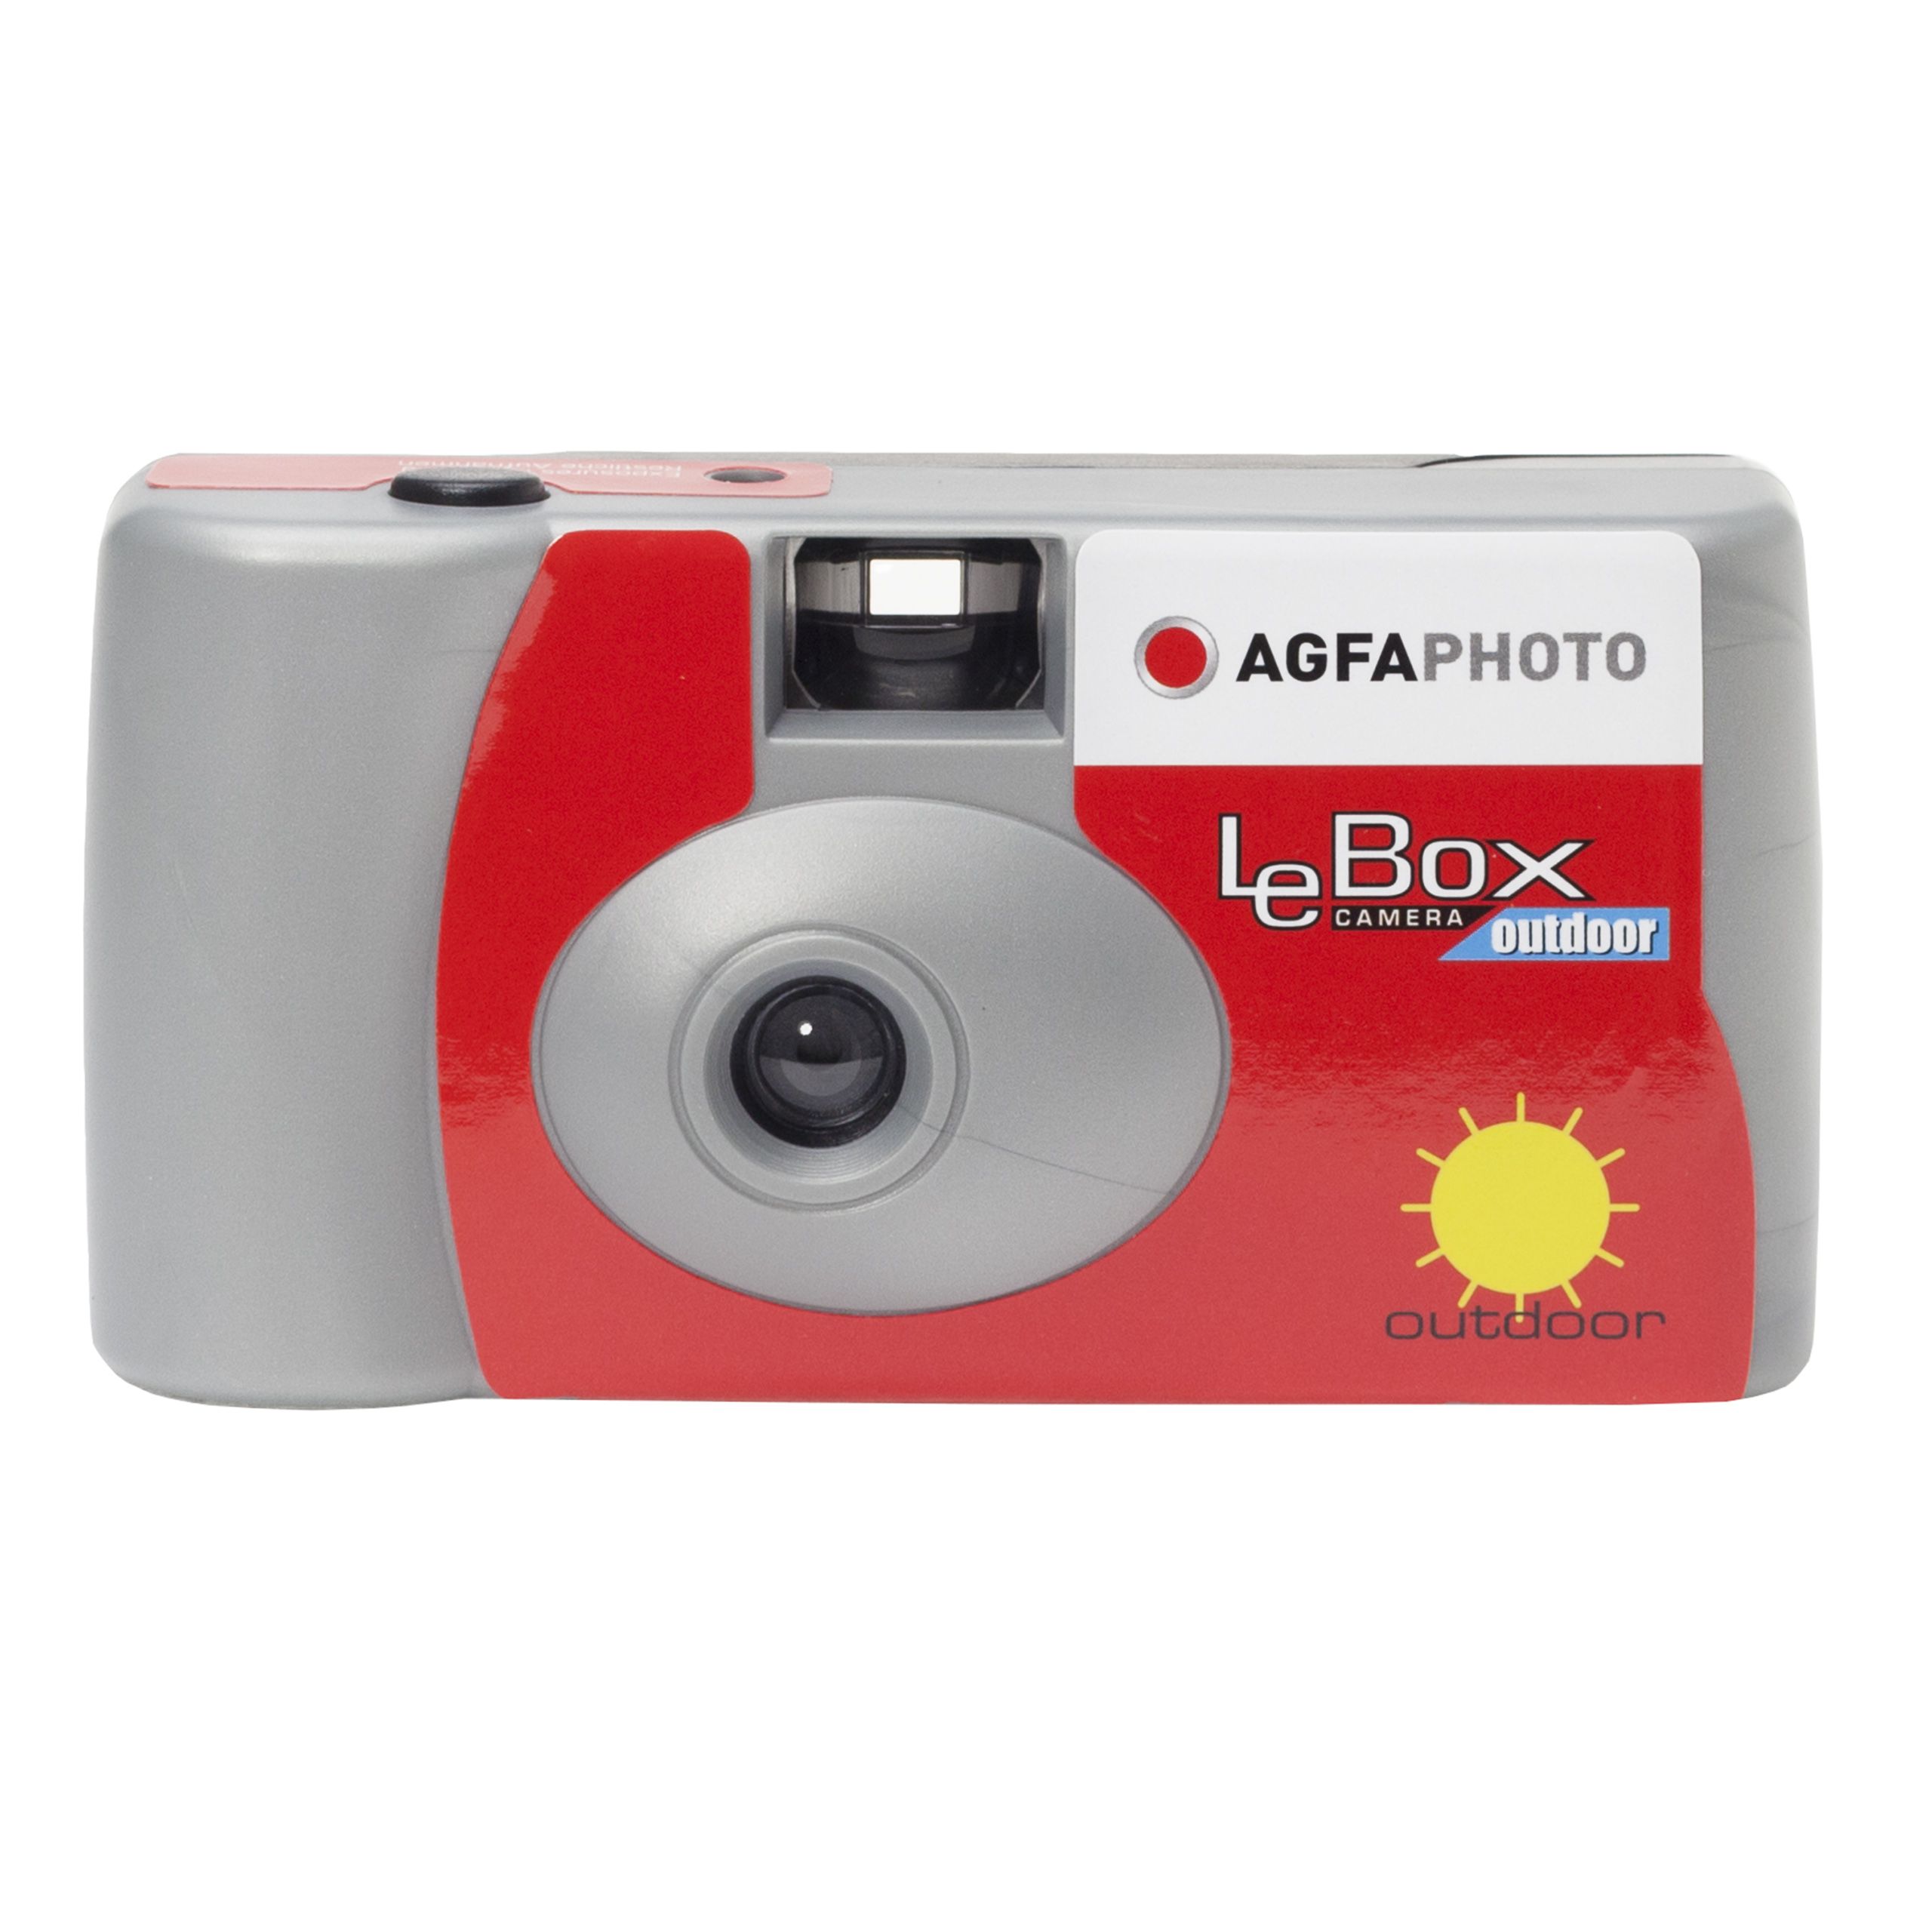 Agfa LeBox cámara desechable 27 exp. - Foto R3, film lab y